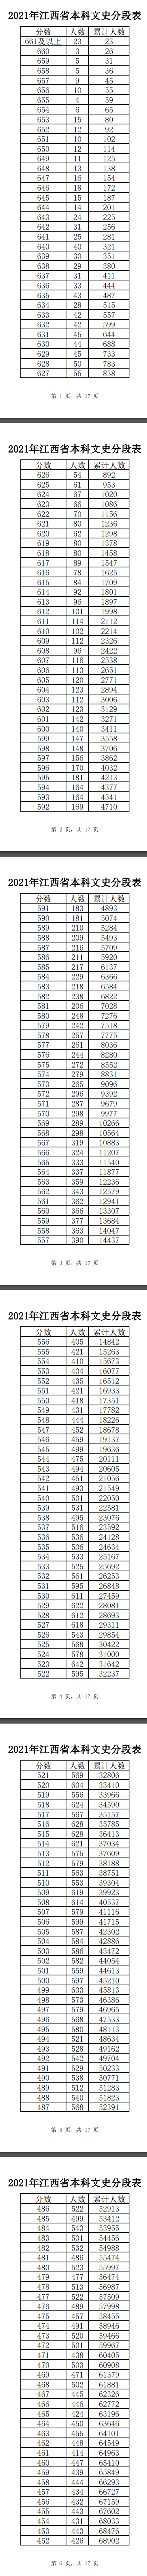 2021江西高考一分一段表-位次排名查询（理科+文科）